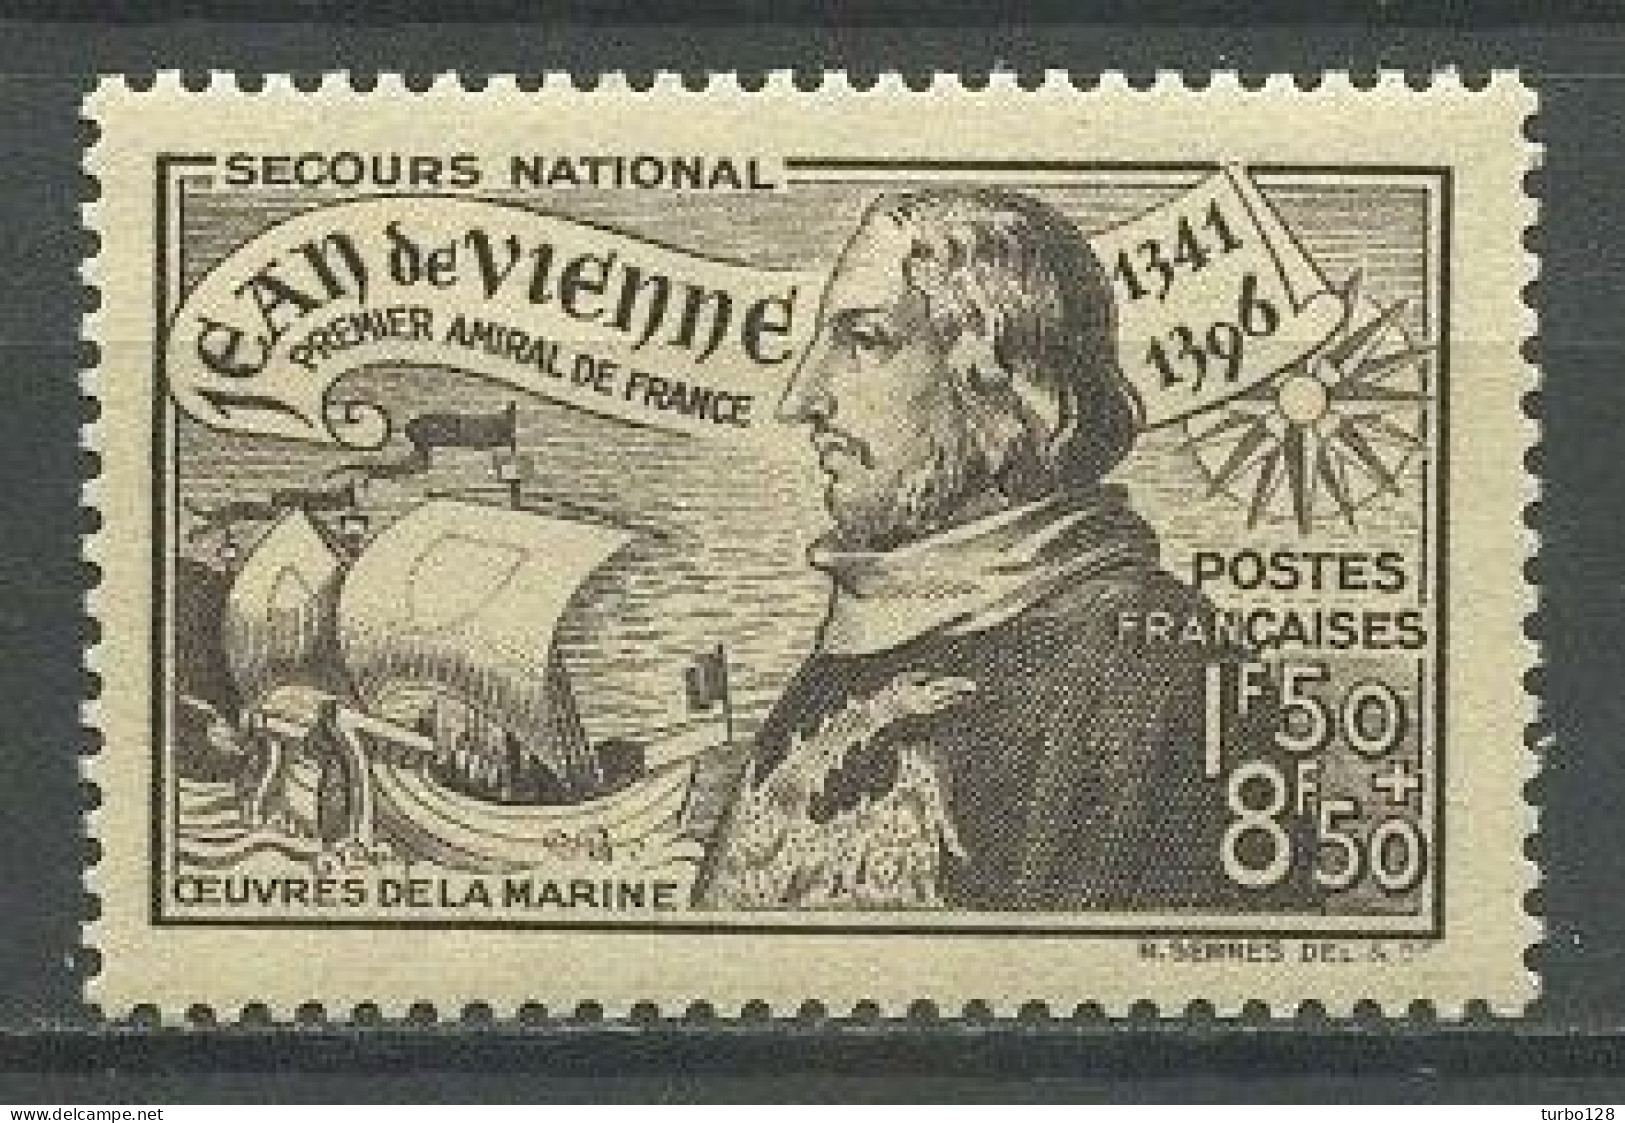 FRANCE 1942 N° 544 ** Neuf MNH Superbe C 1.40 € Jean De Vienne Amiral De France Bateaux Voiliers Sailboats Maritime - Neufs